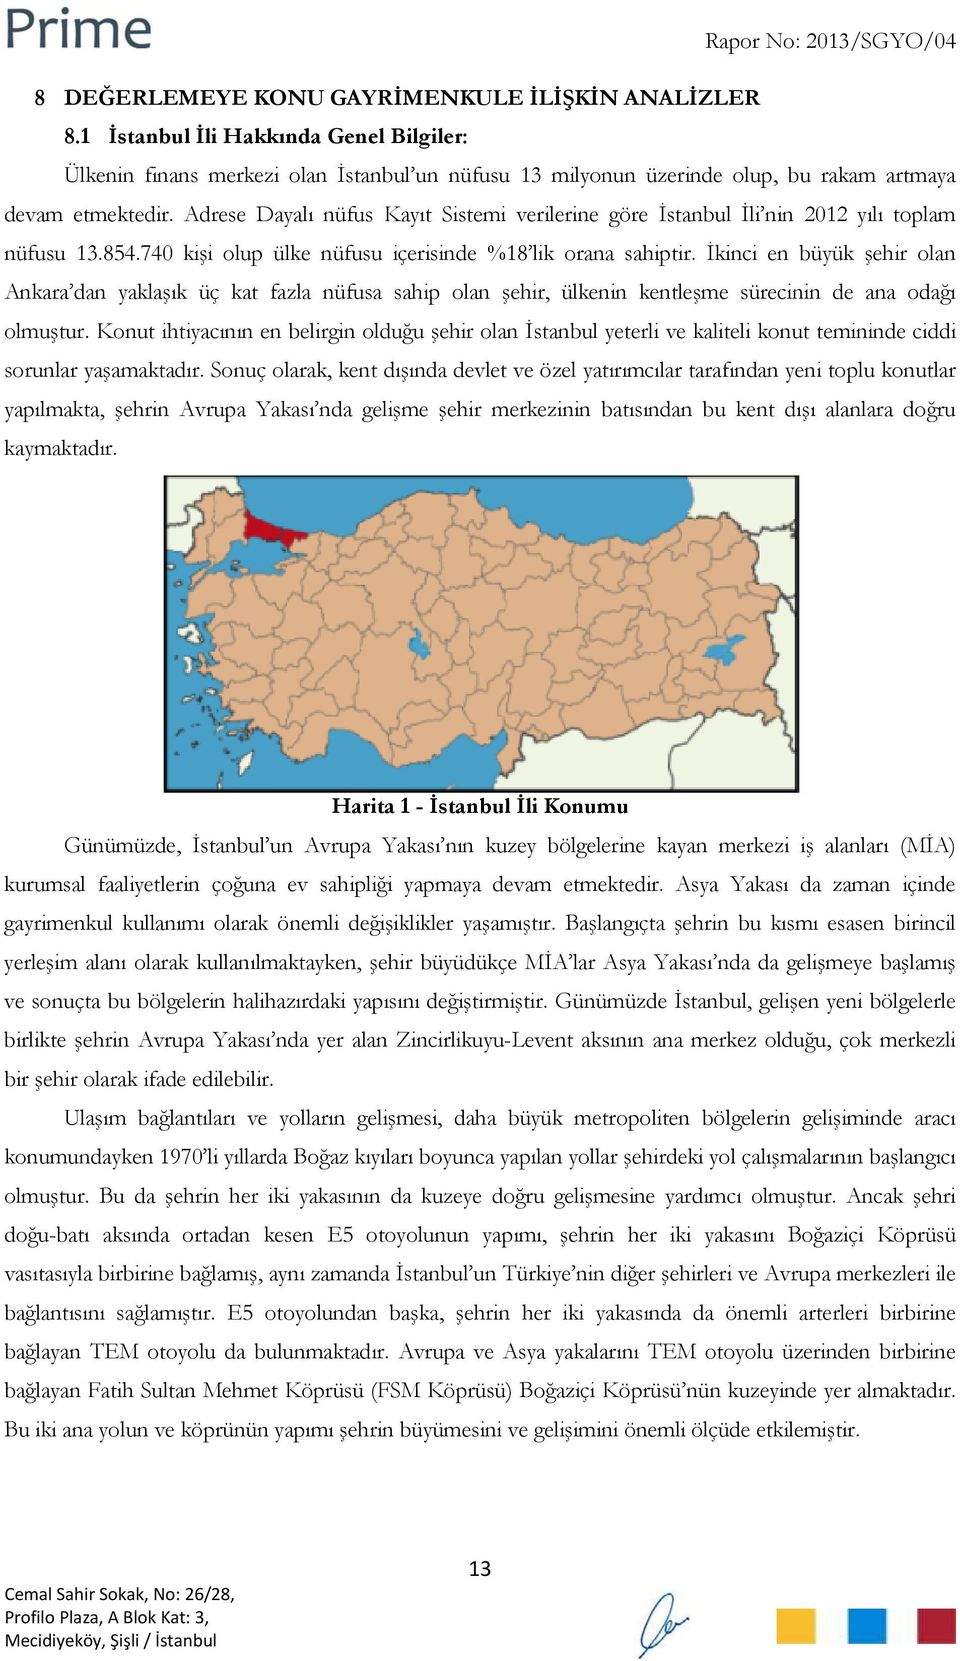 İkinci en büyük şehir olan Ankara dan yaklaşık üç kat fazla nüfusa sahip olan şehir, ülkenin kentleşme sürecinin de ana odağı olmuştur.